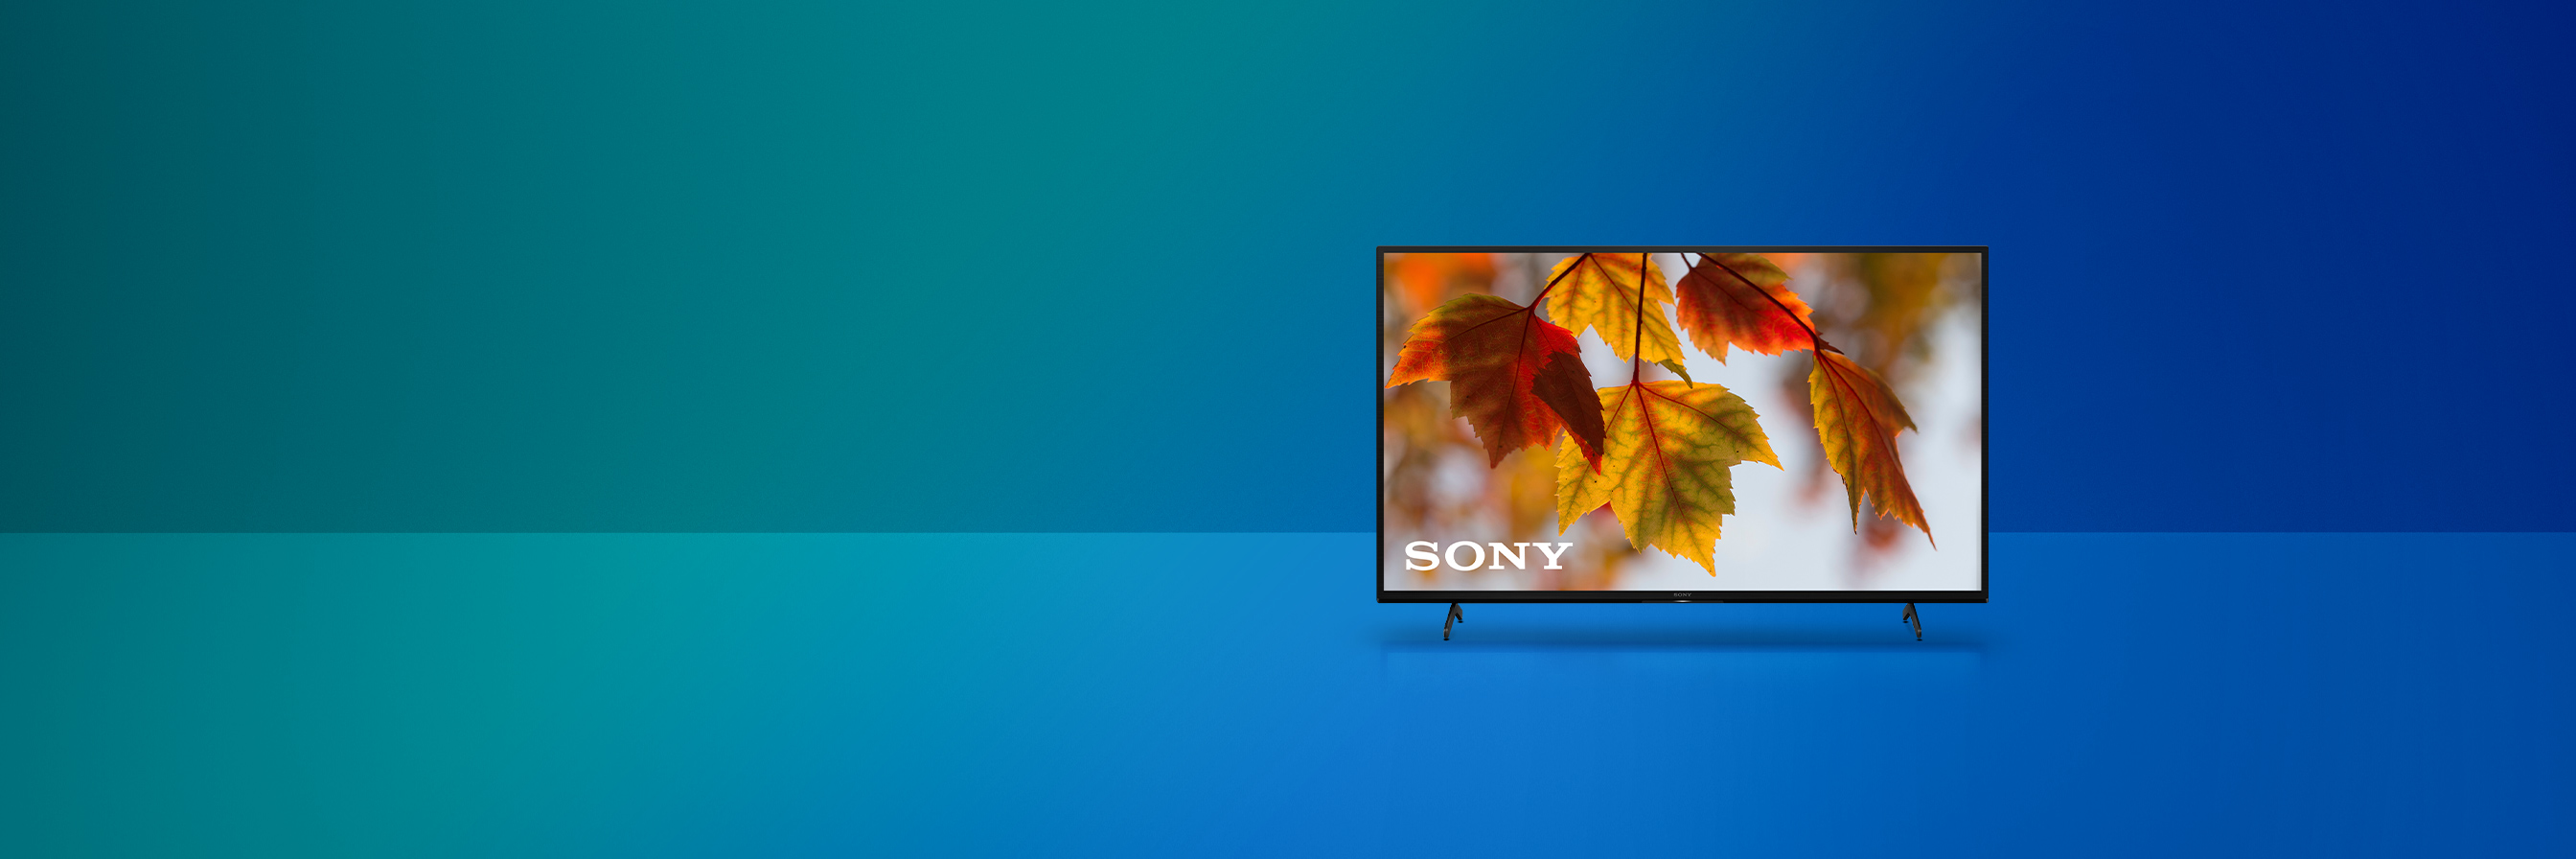 Herbst-Deal: Sony-TV für 99.- statt 899.- 